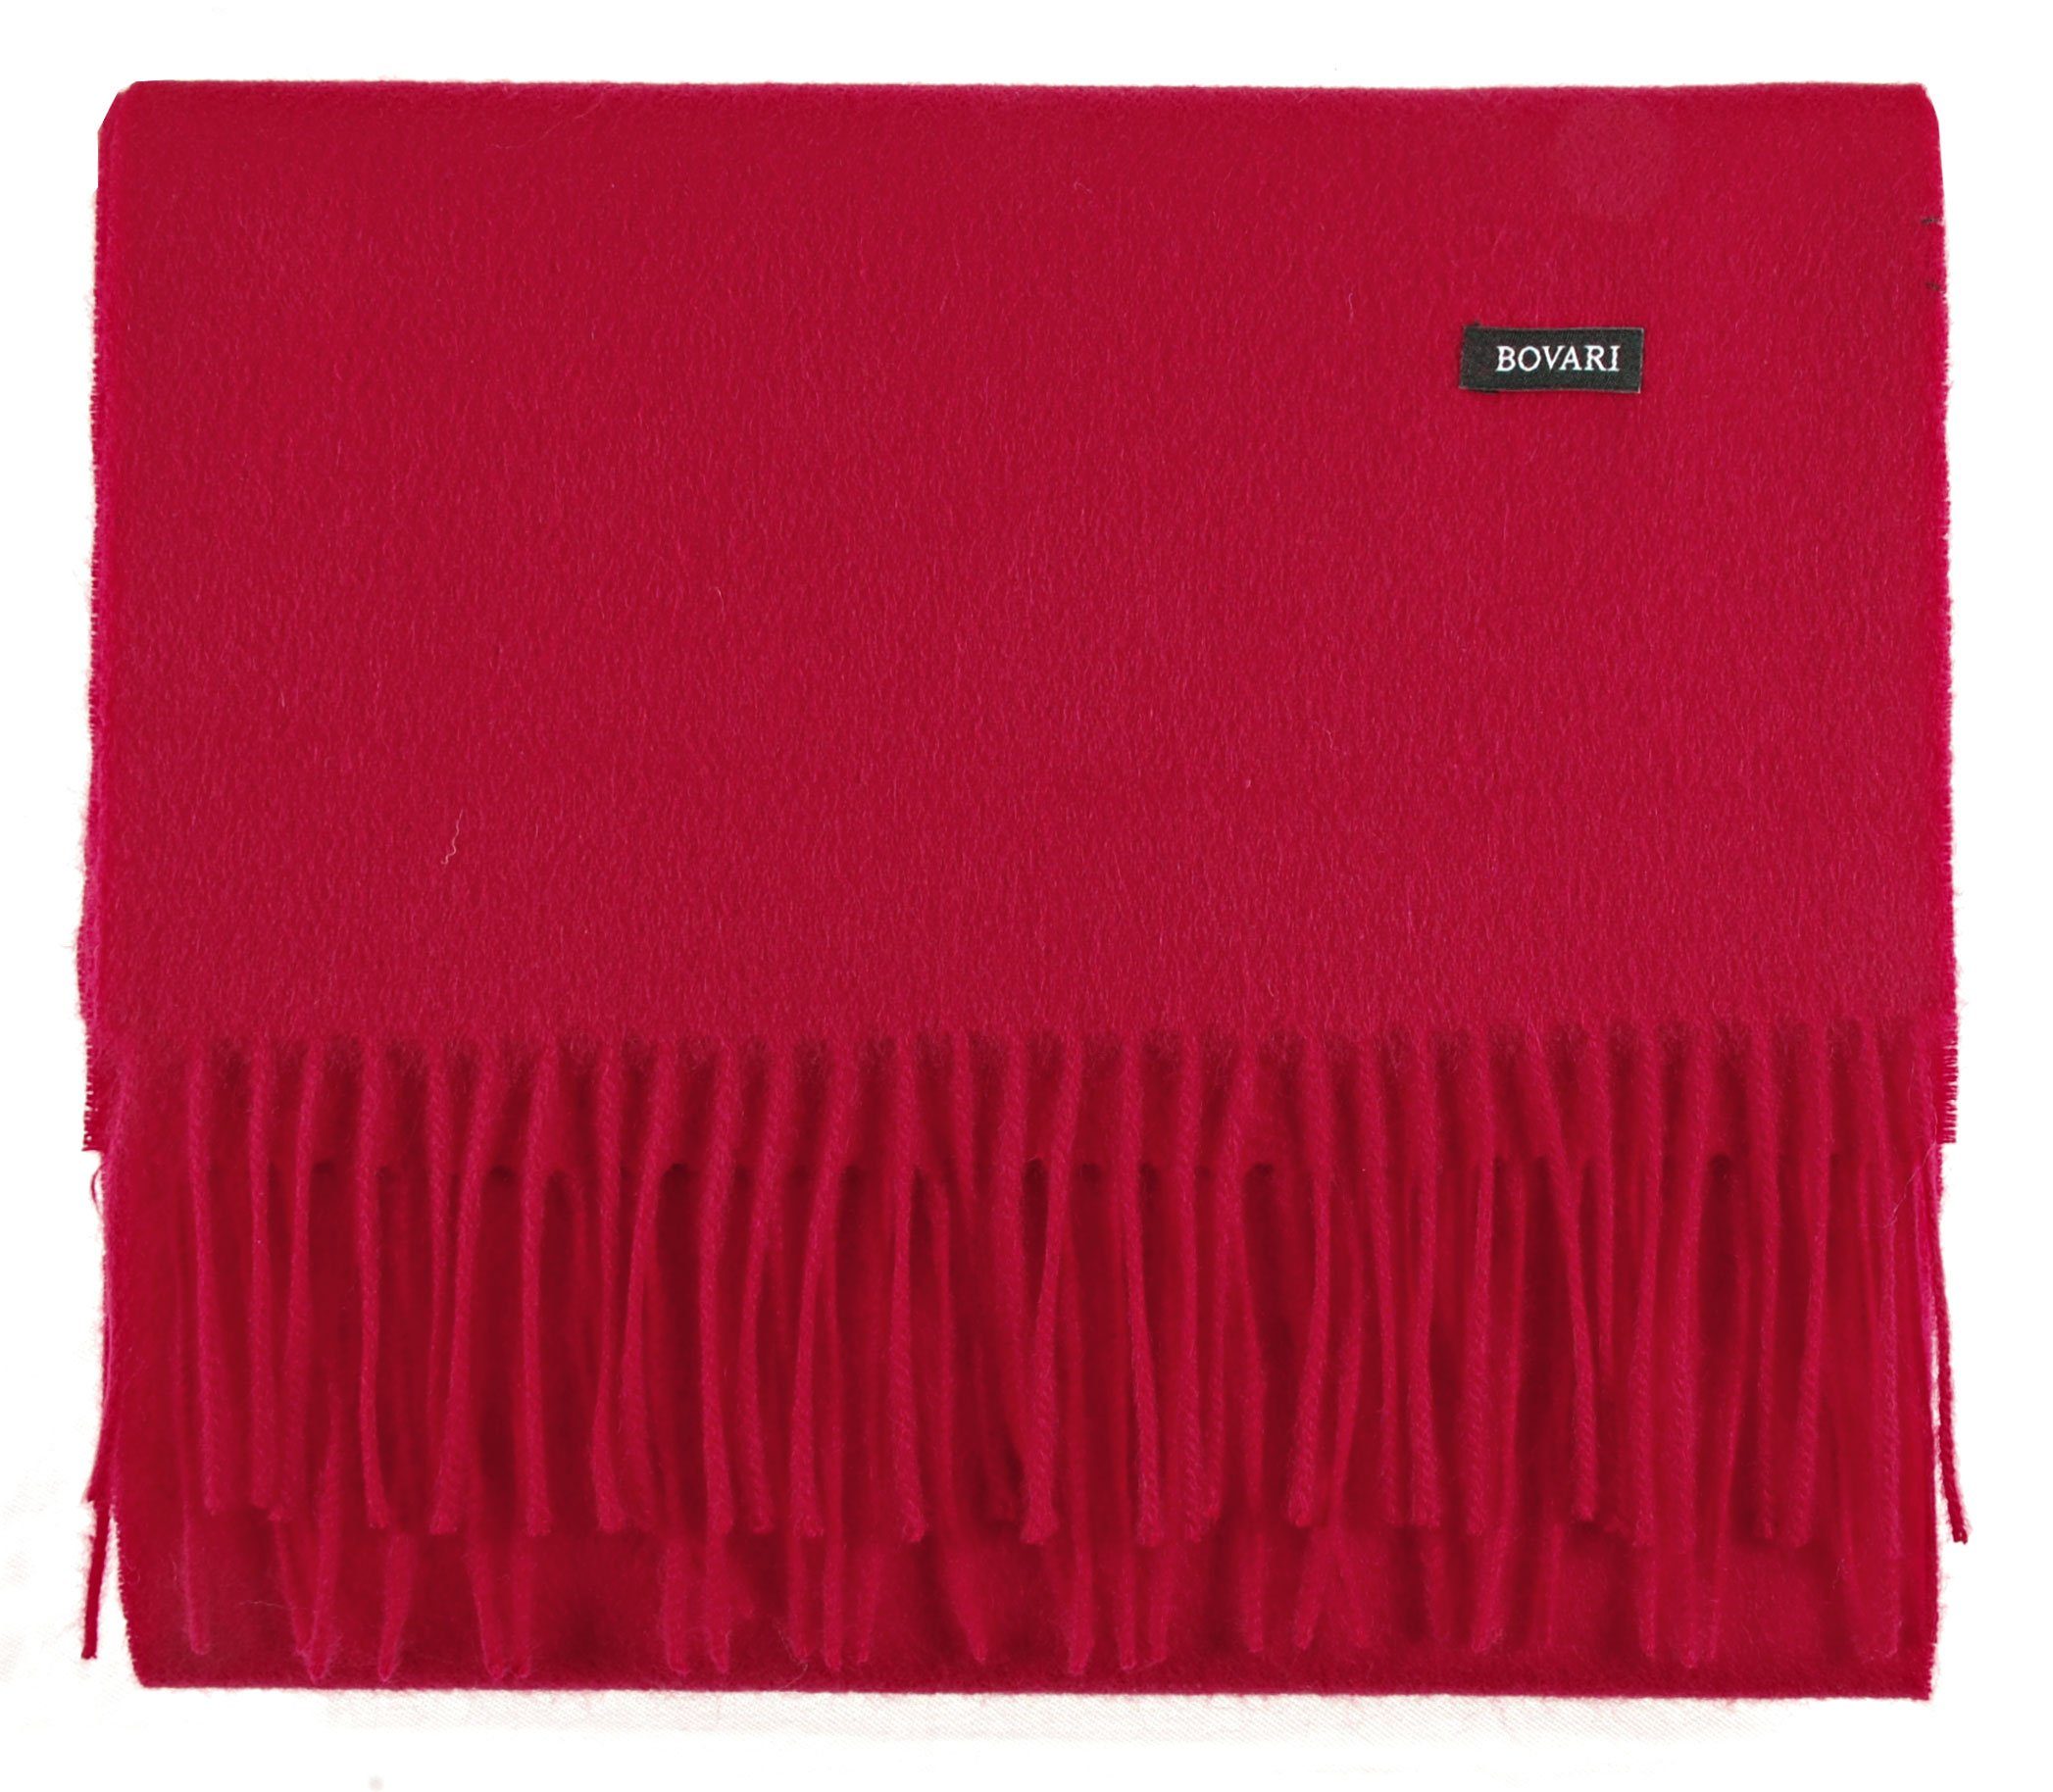 Bovari Kaschmirschal Kaschmir Schal Damen – 100% Kaschmir/Cashmere – Premium Qualität, 180 x 31 cm rot